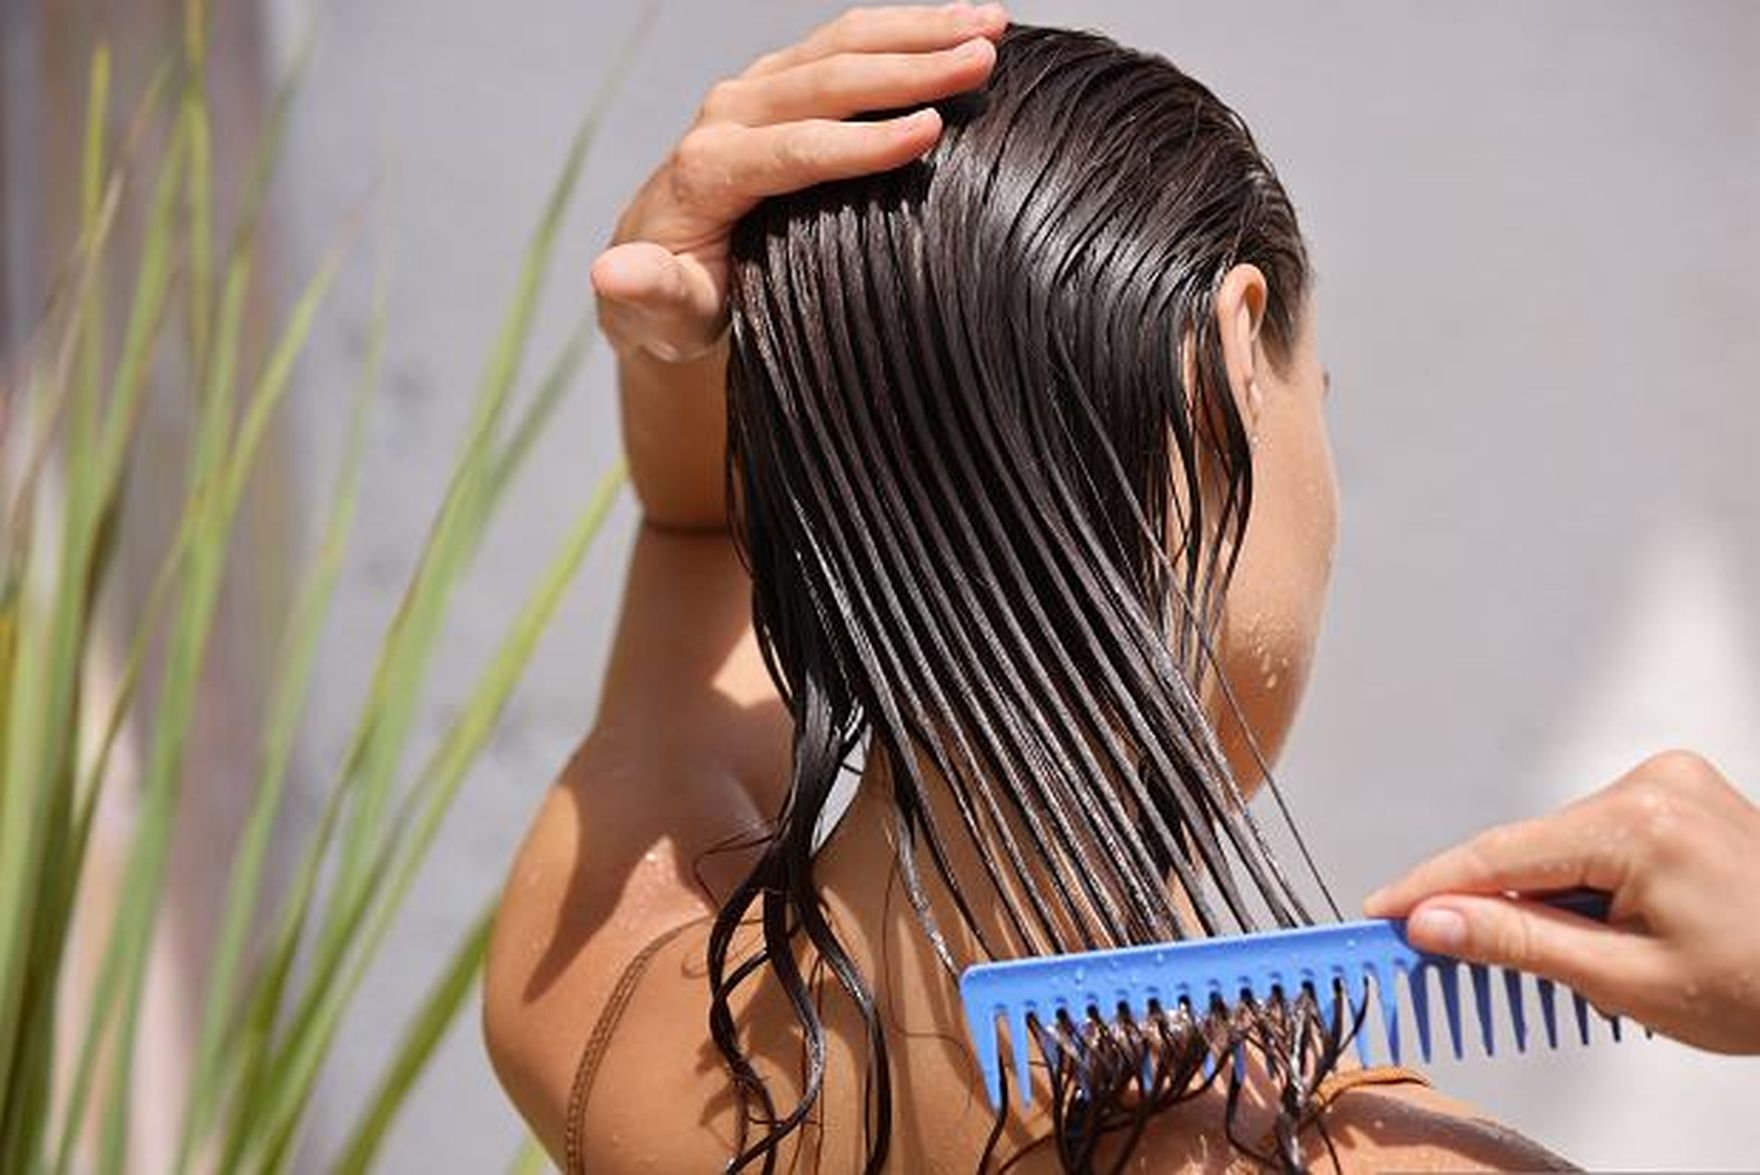 Powakacyjna regeneracja włosów z kosmetykami francuskiej marki. Linia Anti-Hair Loss przeciwdziała wypadaniu, wzmacnia i regeneruje!